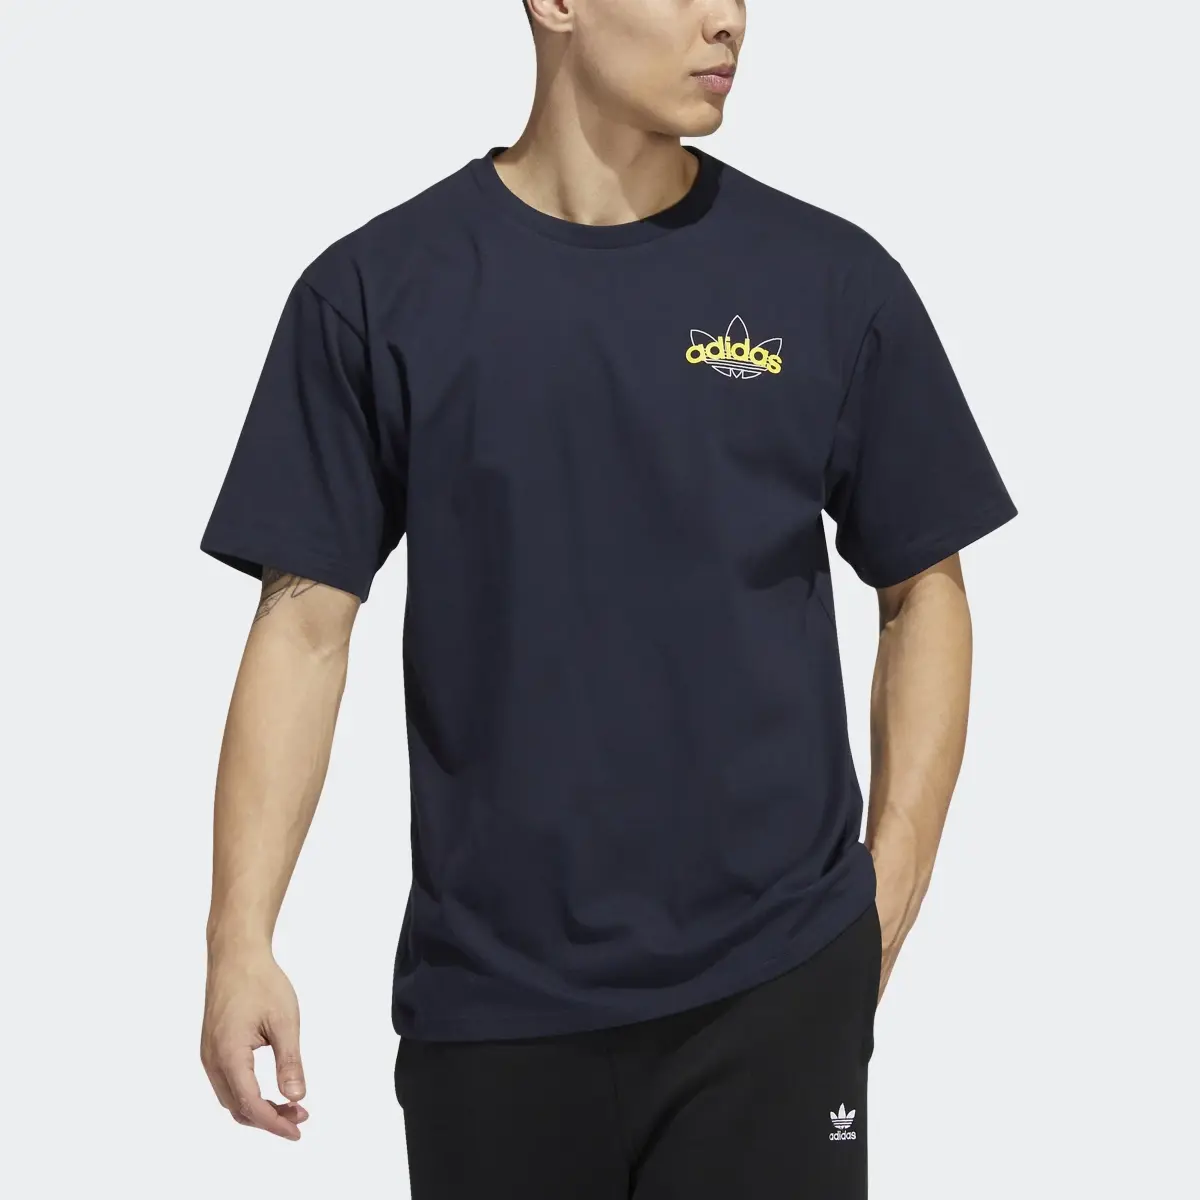 Adidas Athletic Club T-Shirt. 1